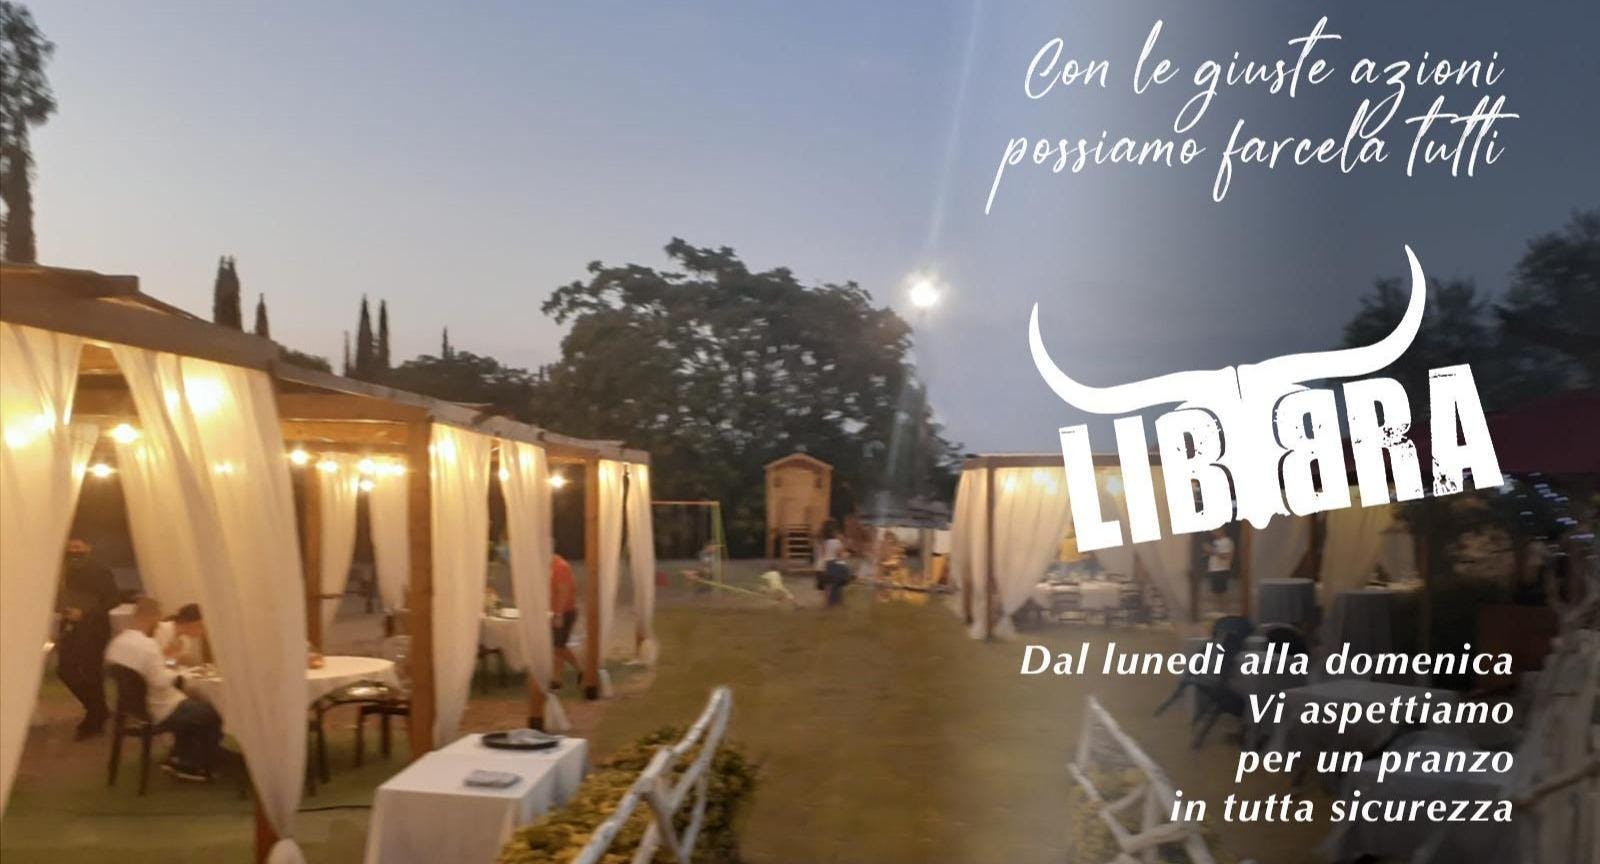 Photo of restaurant Libbra in Appio, Rome